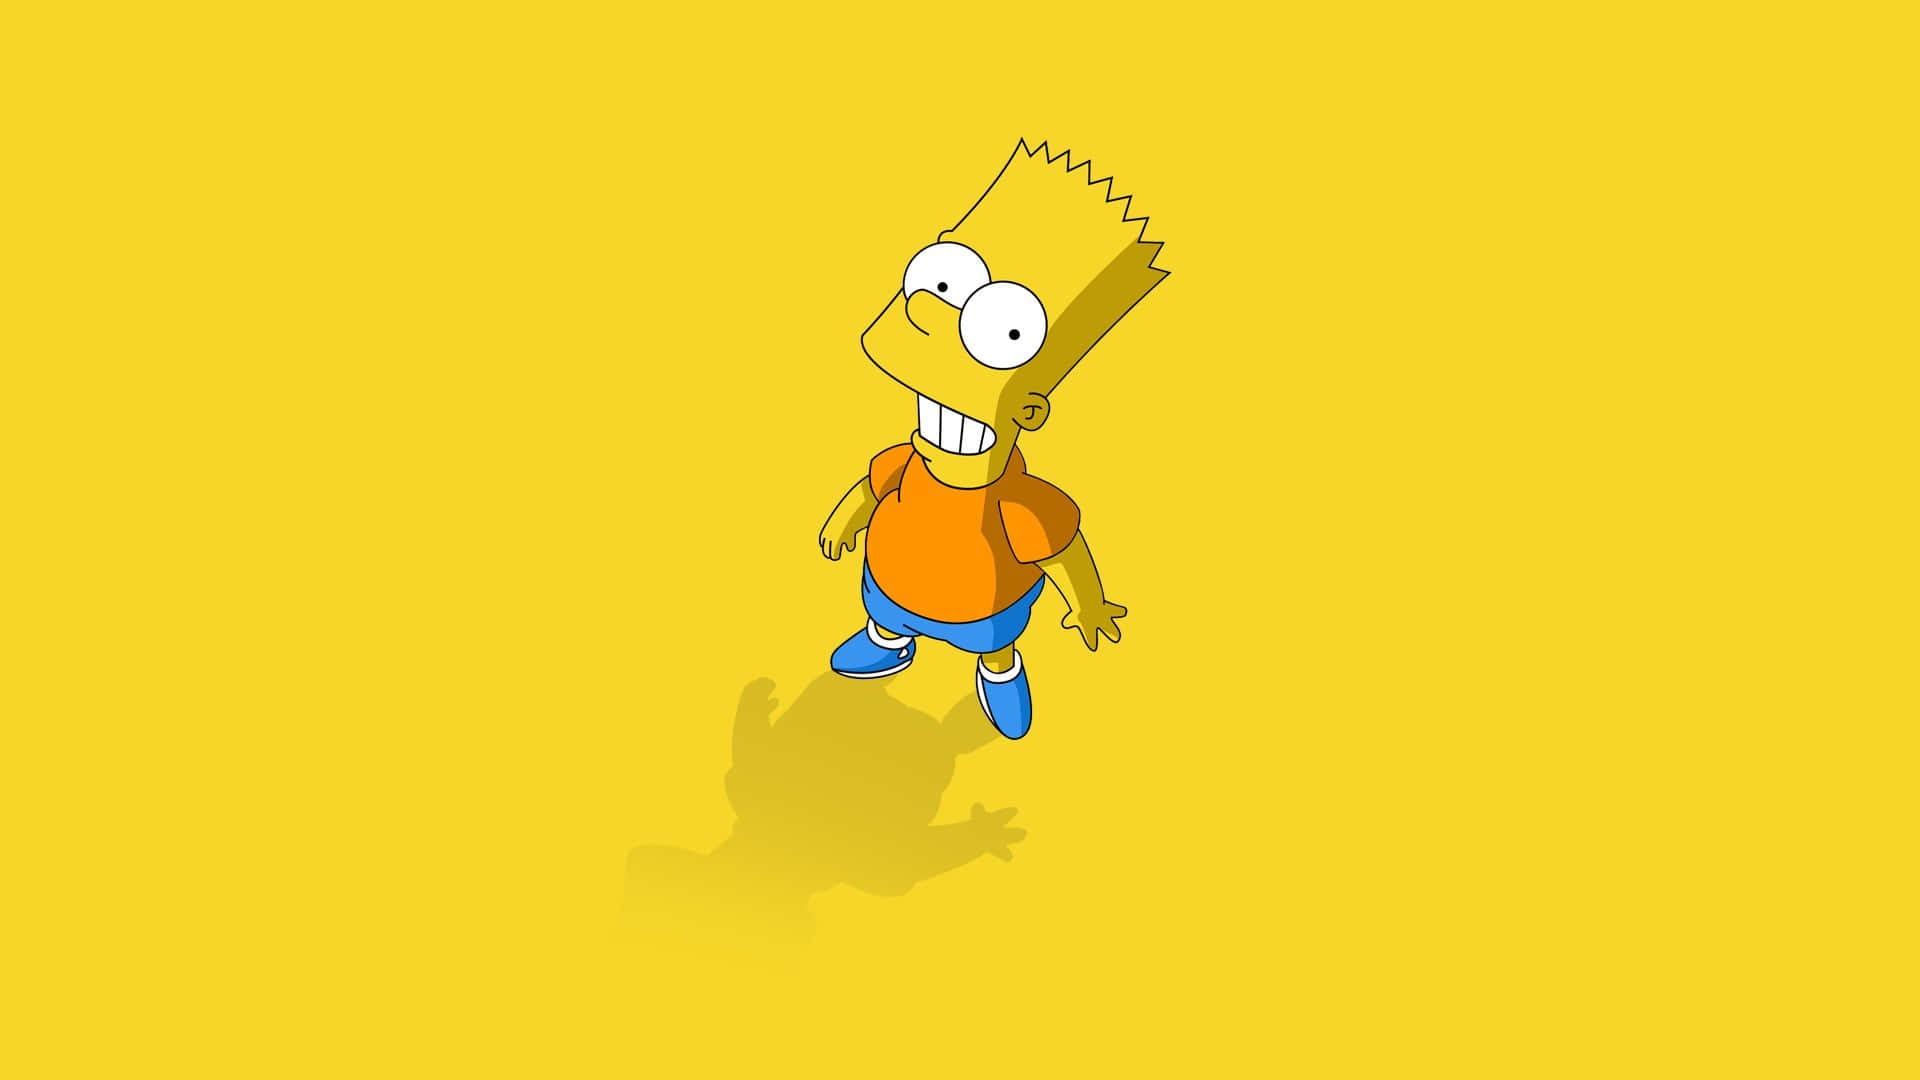 Bildgenießen Sie Eine Bunt Unterhaltsame Reise In Die Welt Von The Simpsons Mit Dem Simpsons Pc Wallpaper